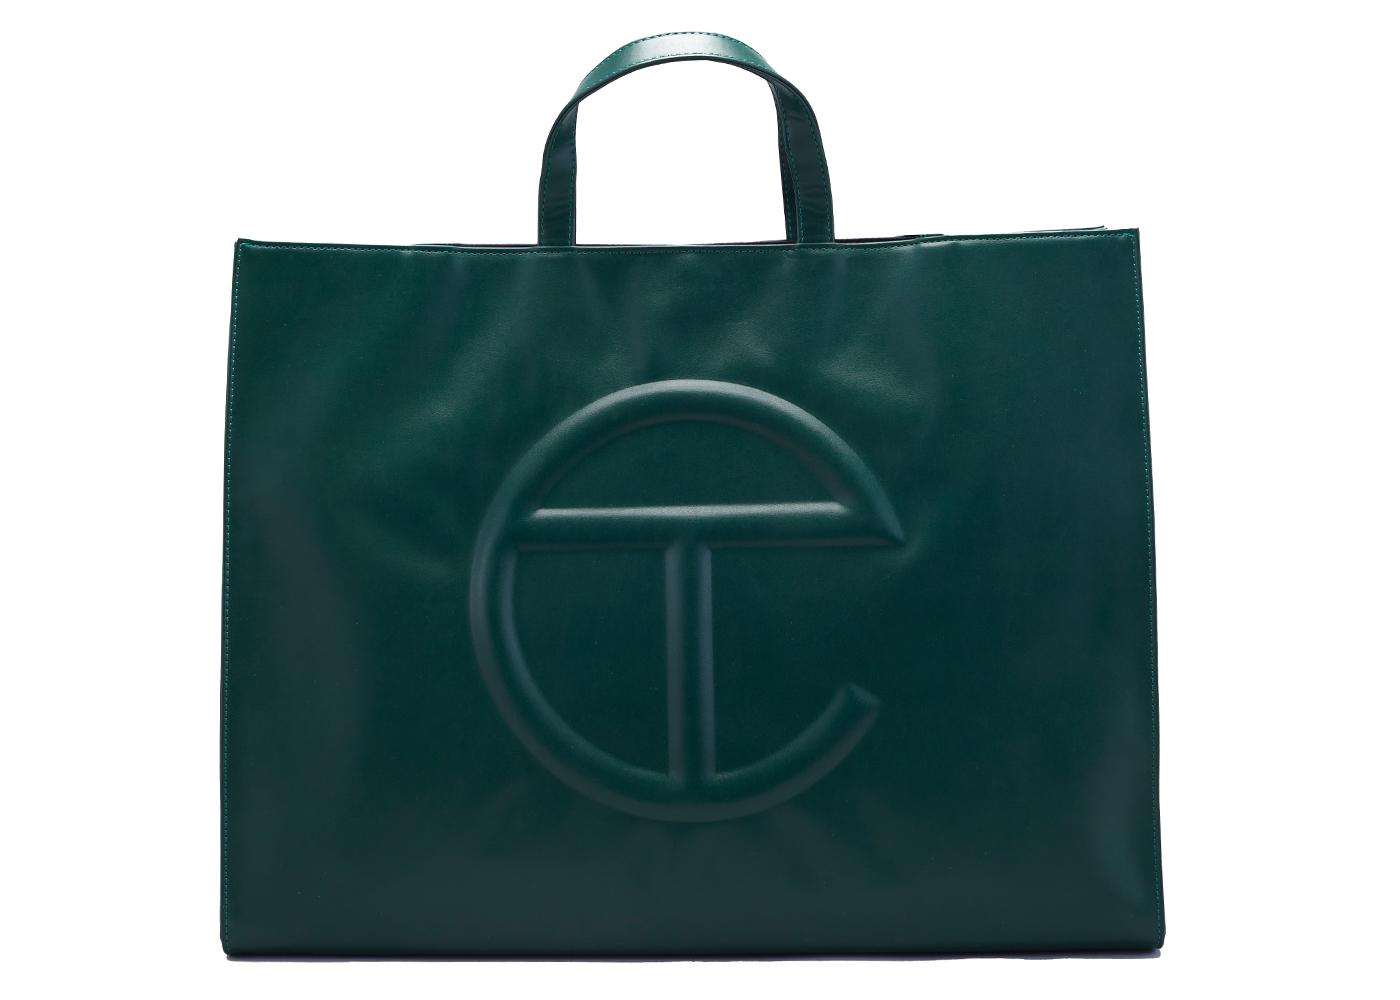 Telfar Shopping Bag Large Dark Olive